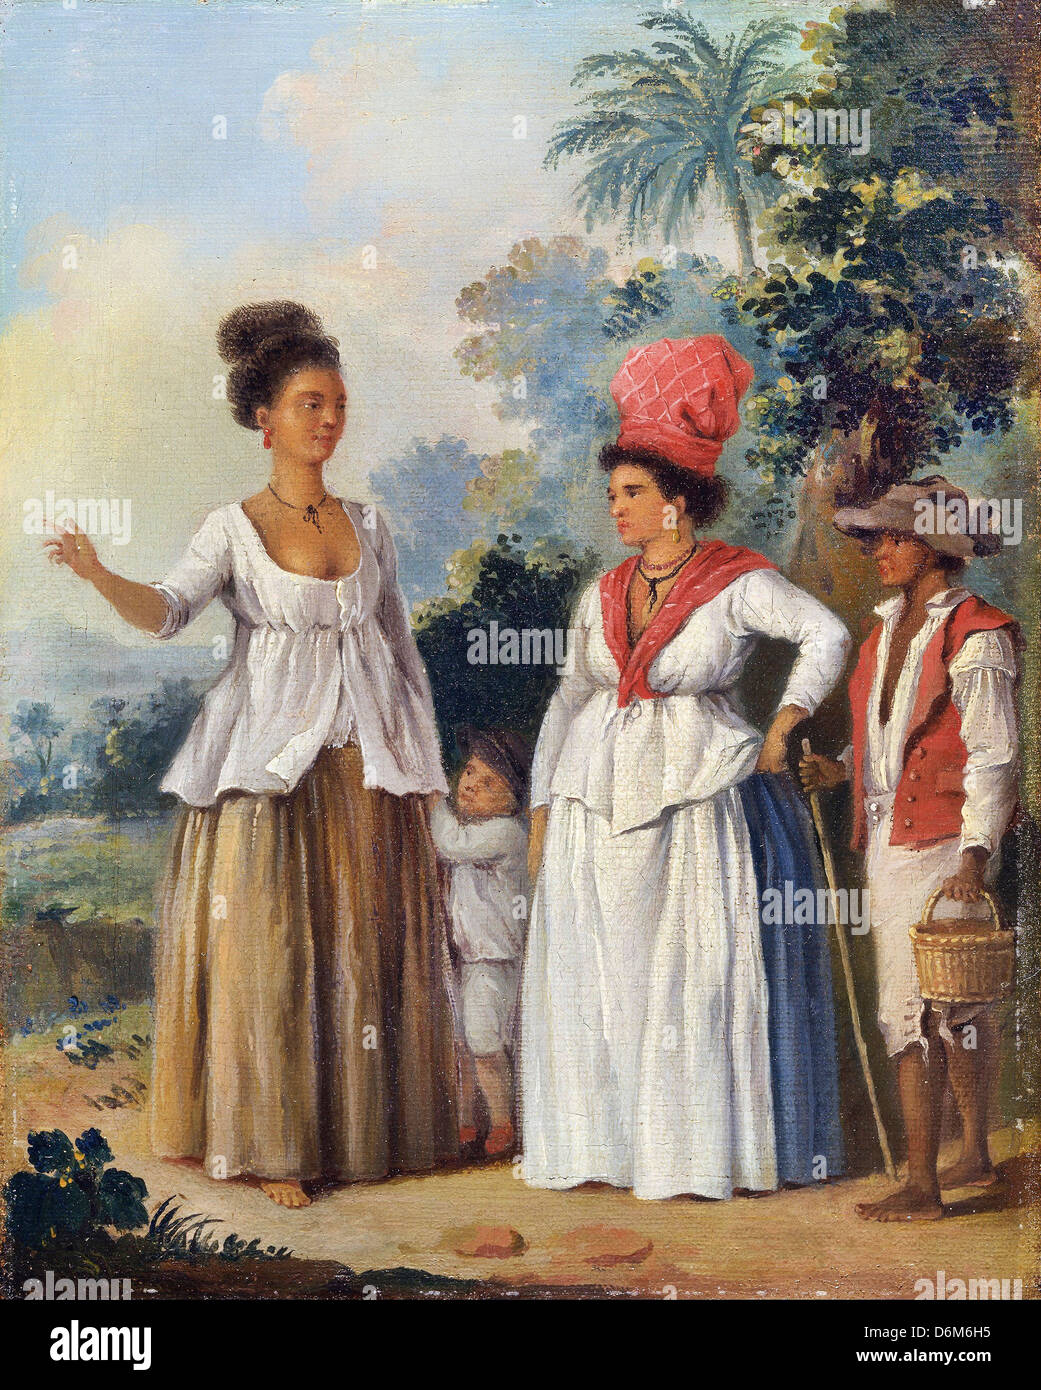 Agostino Brunias, West Indian Frauen der Farbe, mit einem Kind und seinen schwarzen Diener. Ca. 1780 Öl auf Leinwand. Stockfoto